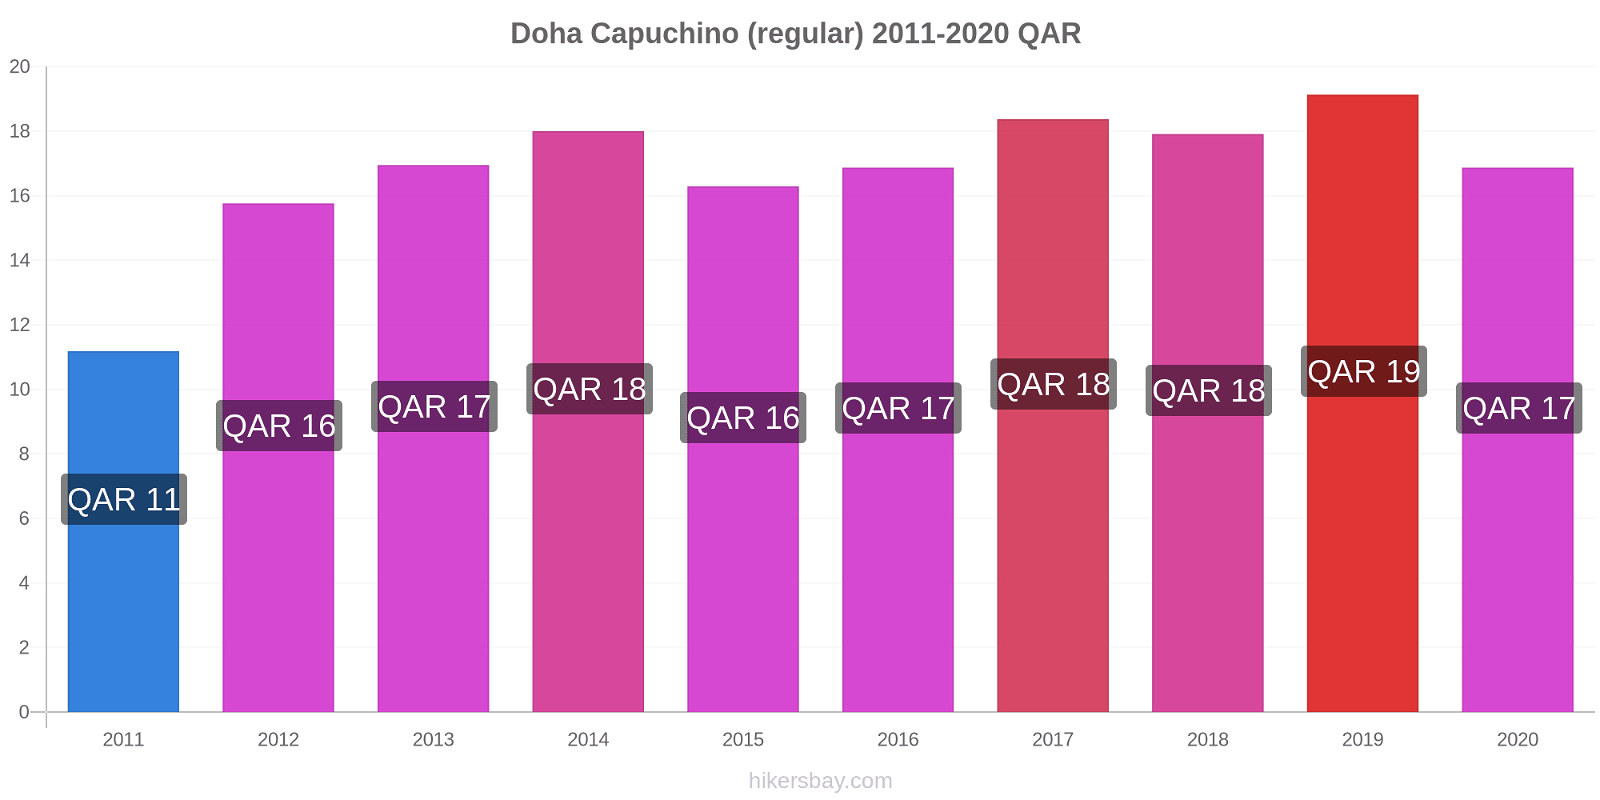 Doha cambios de precios Capuchino (regular) hikersbay.com